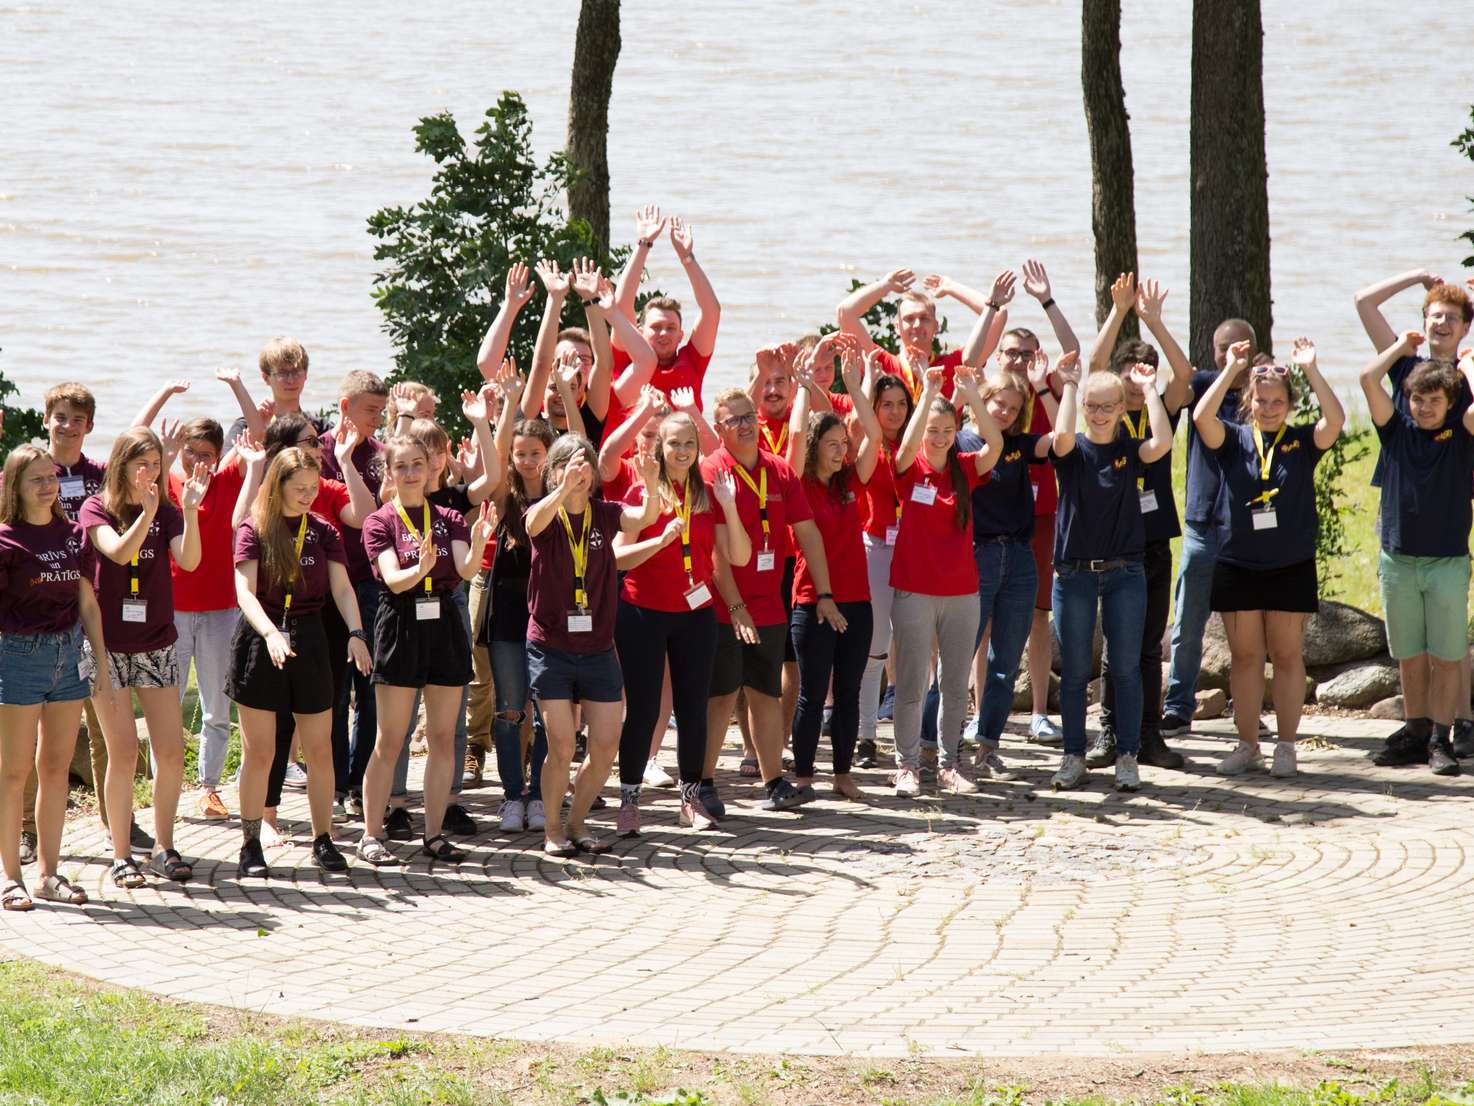 Eine große Gruppe junger Menschen in bunten T-Shirts steht vor einem See. Sie jubeln und heben die Arme in die Luft.